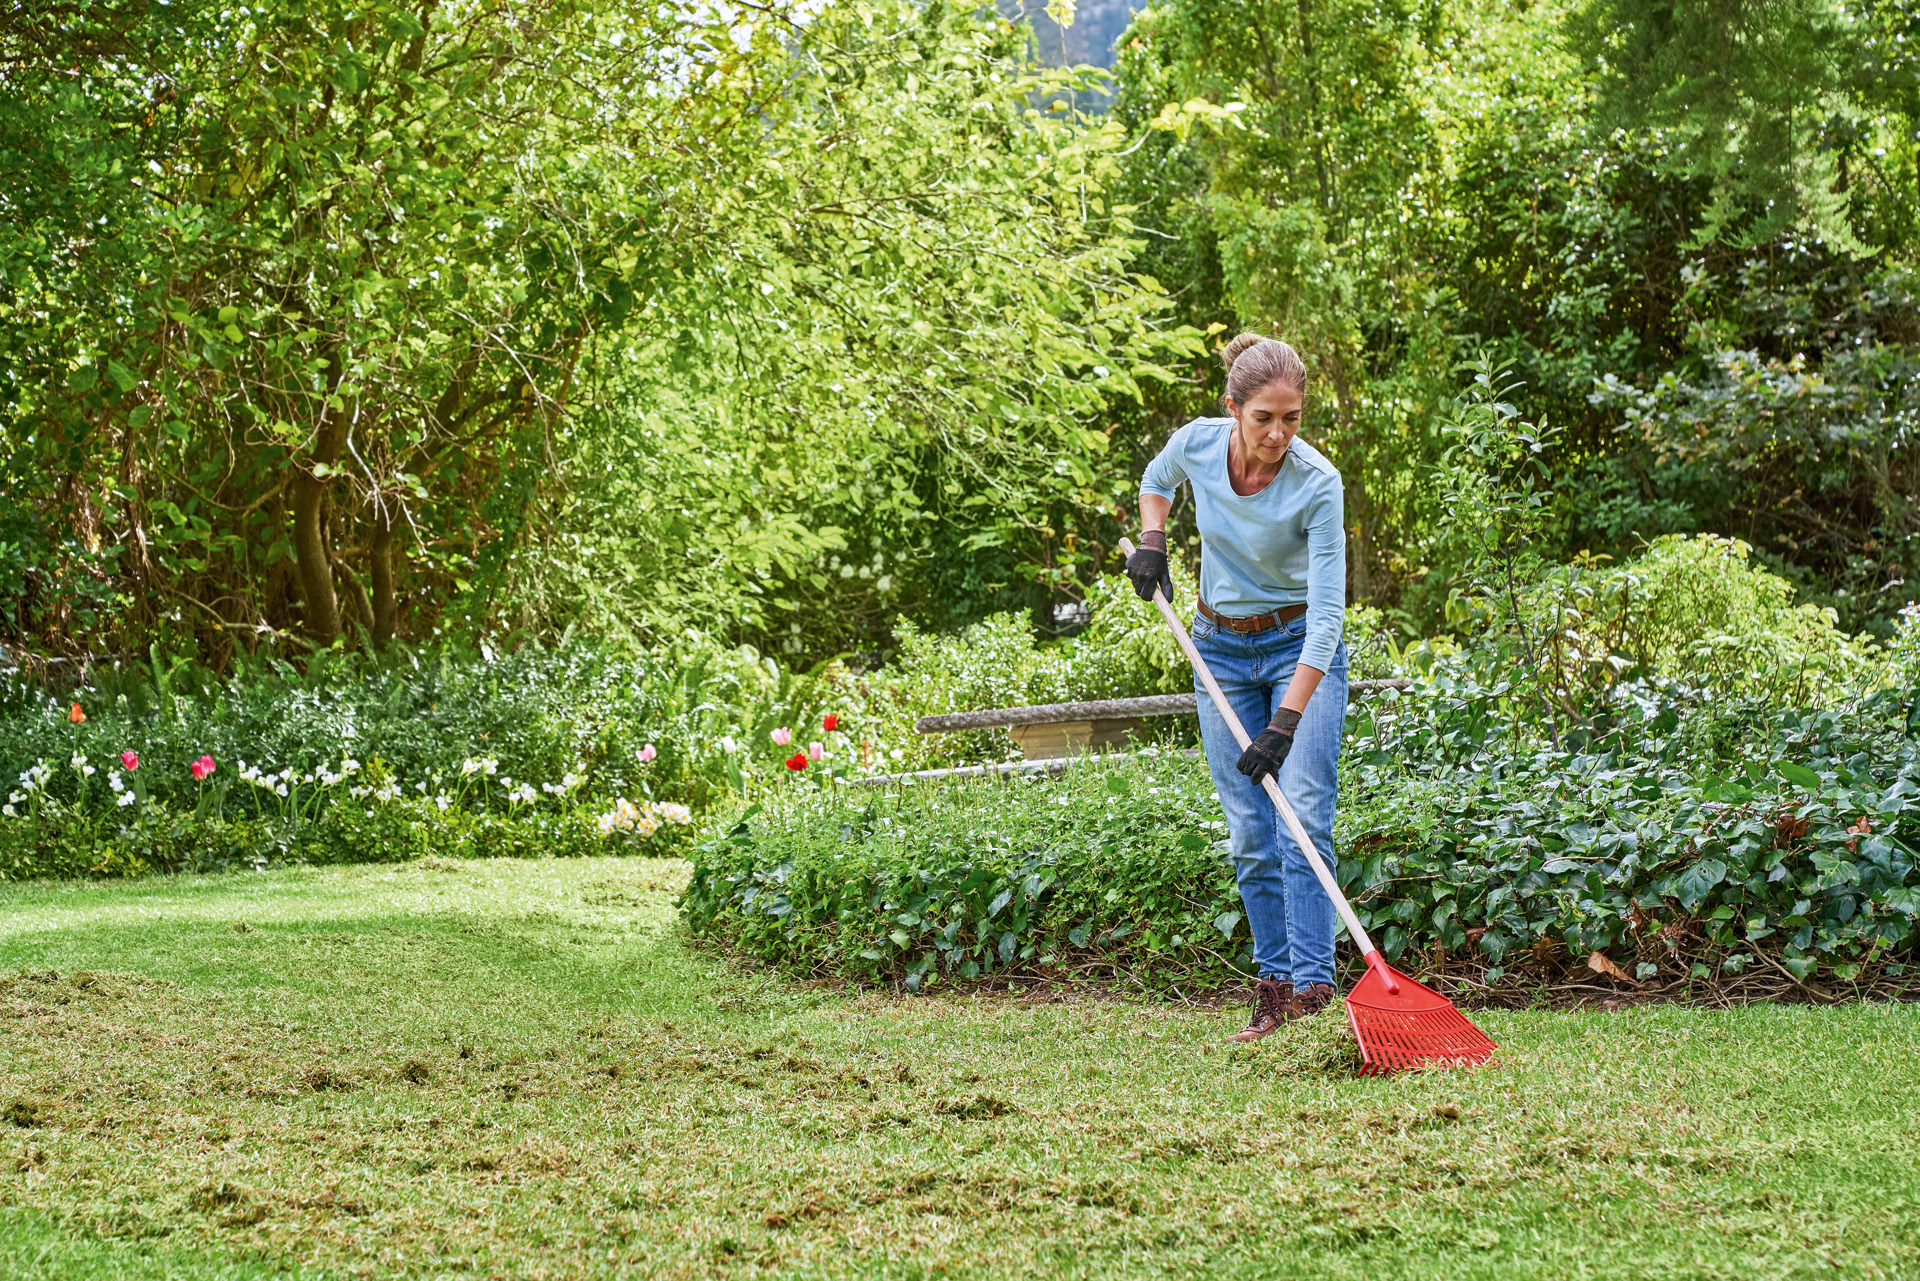 Woman rakes cut grass in her garden